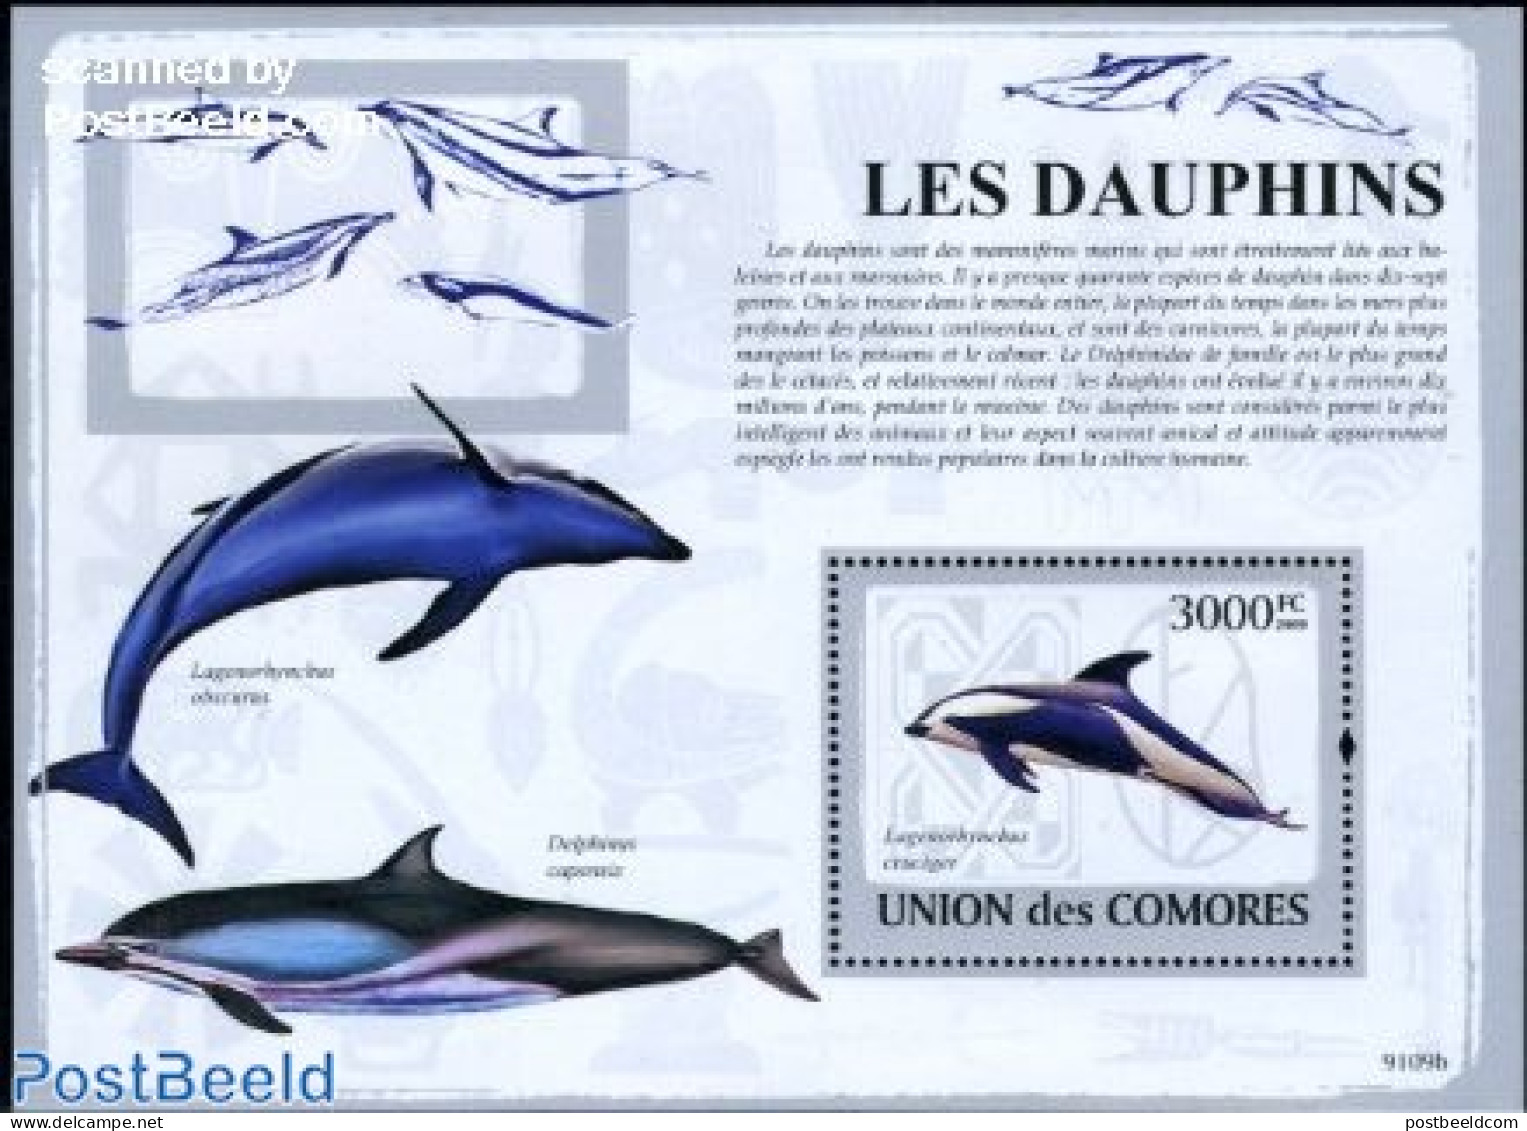 Comoros 2009 Dolphins S/s, Mint NH, Nature - Sea Mammals - Comoren (1975-...)